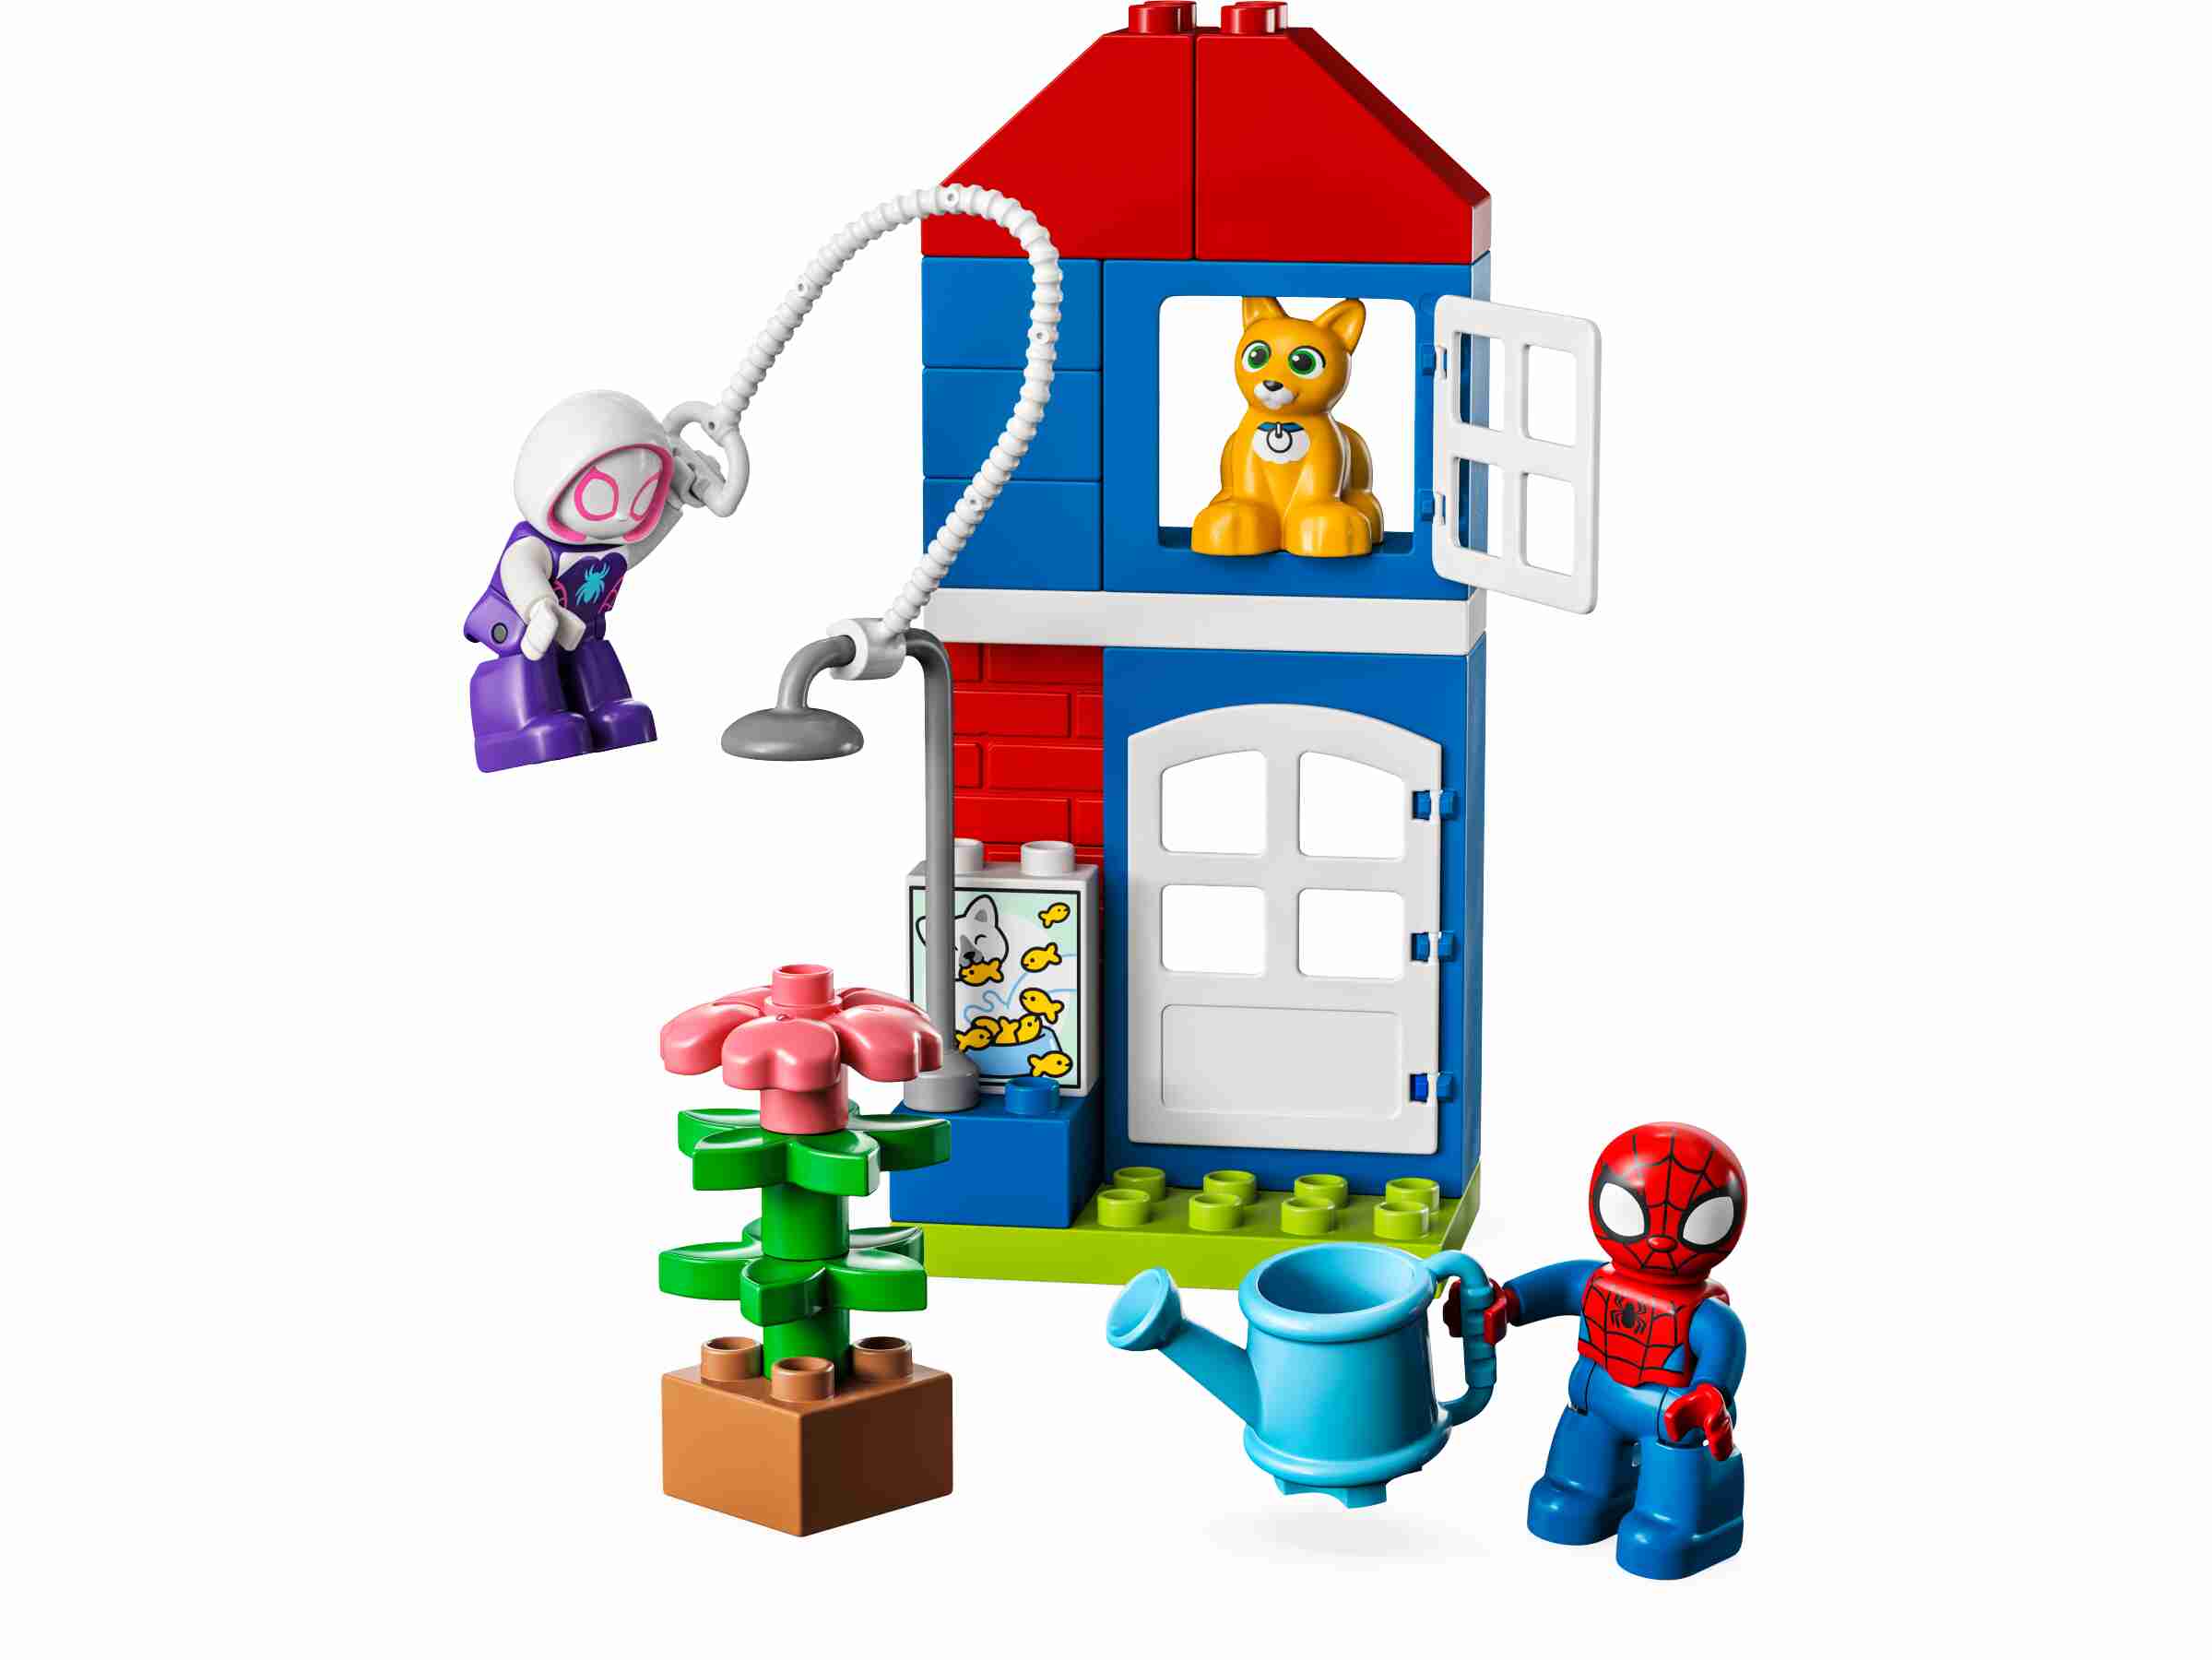 LEGO 10995 DUPLO Marvel Spider-Mans Haus, Spidey, Ghost-Spider und Katze Bootsie